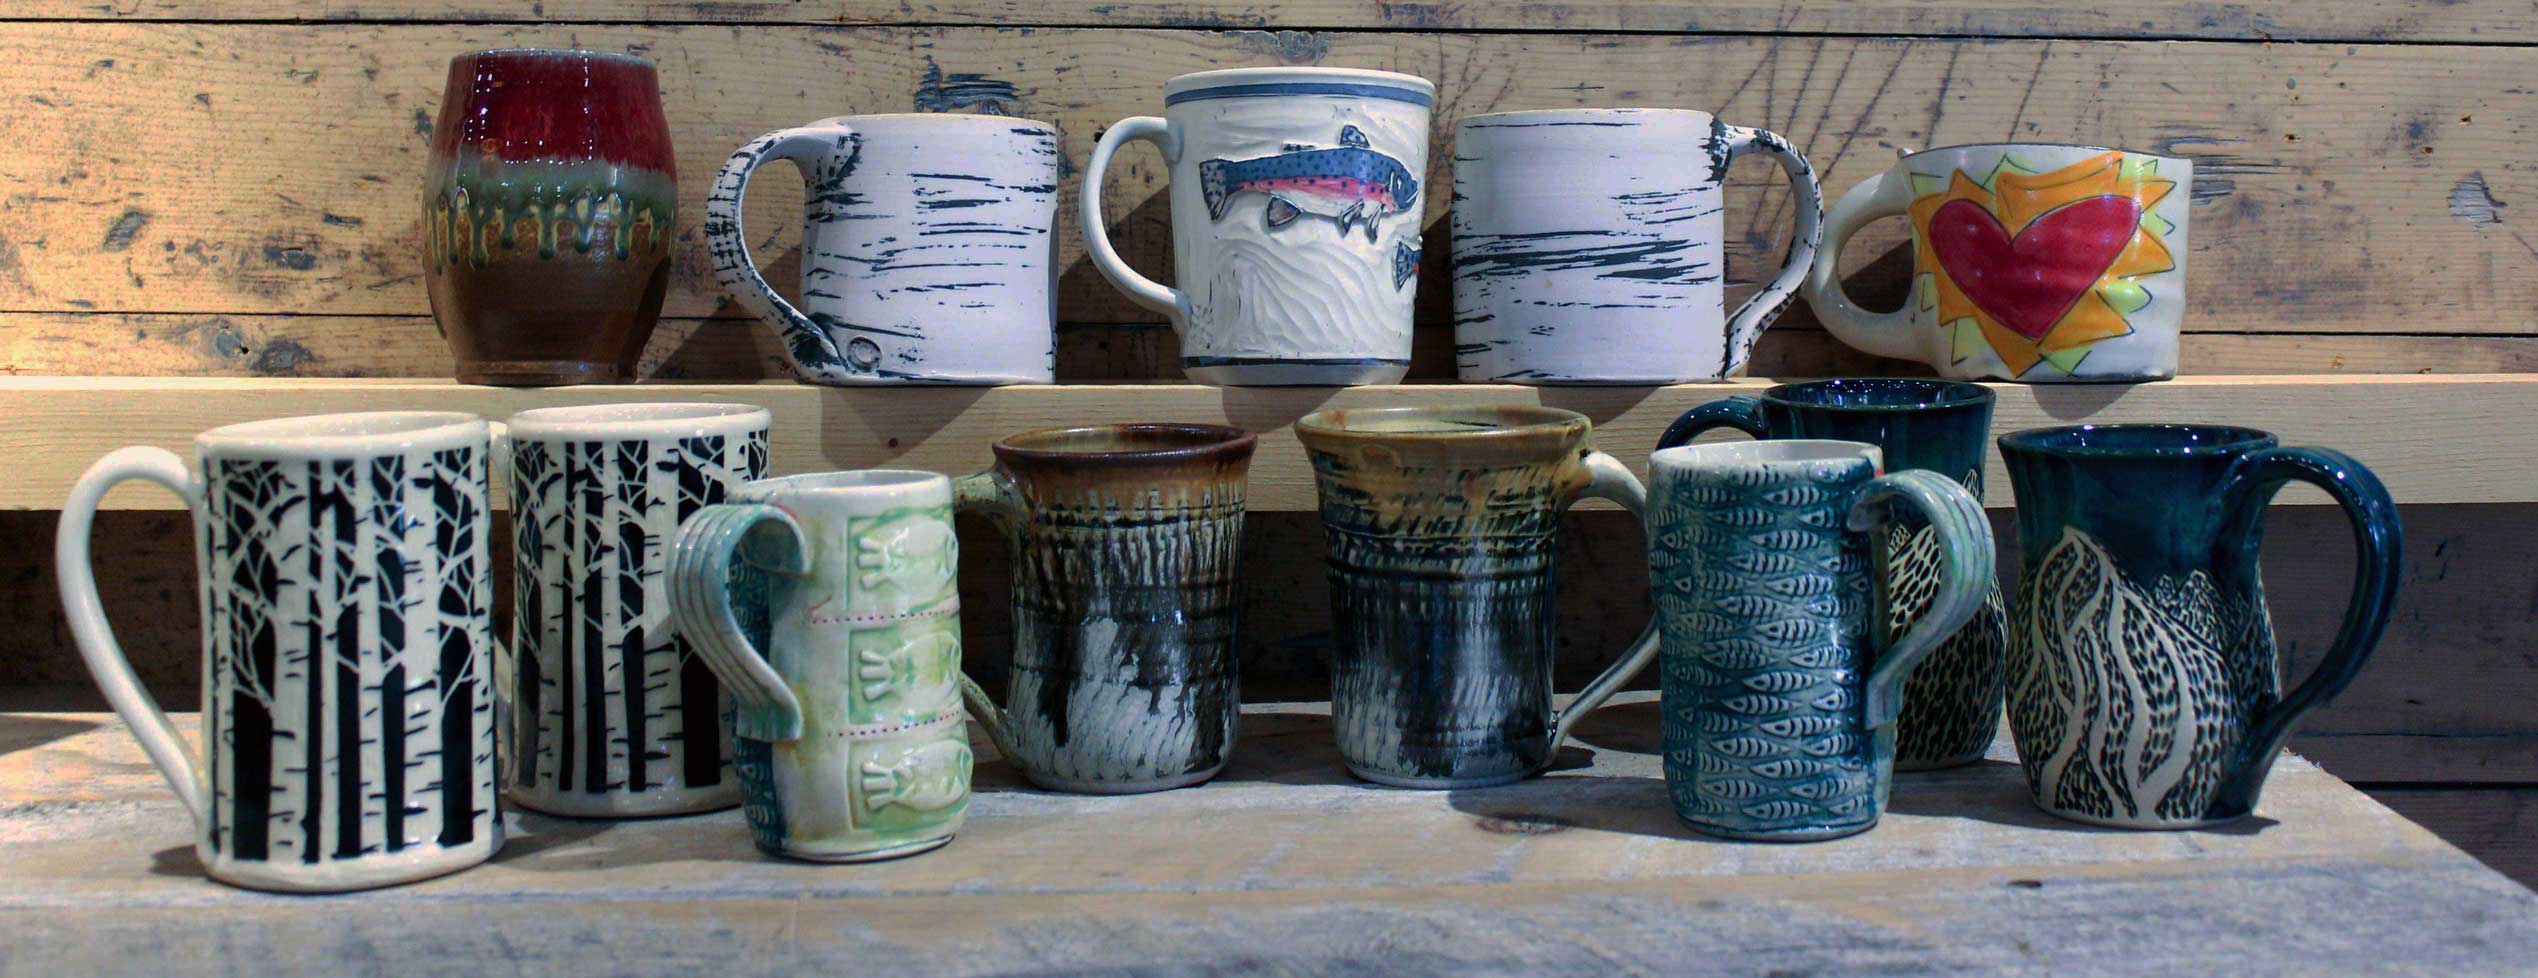 handmade stoneware coffee mugs